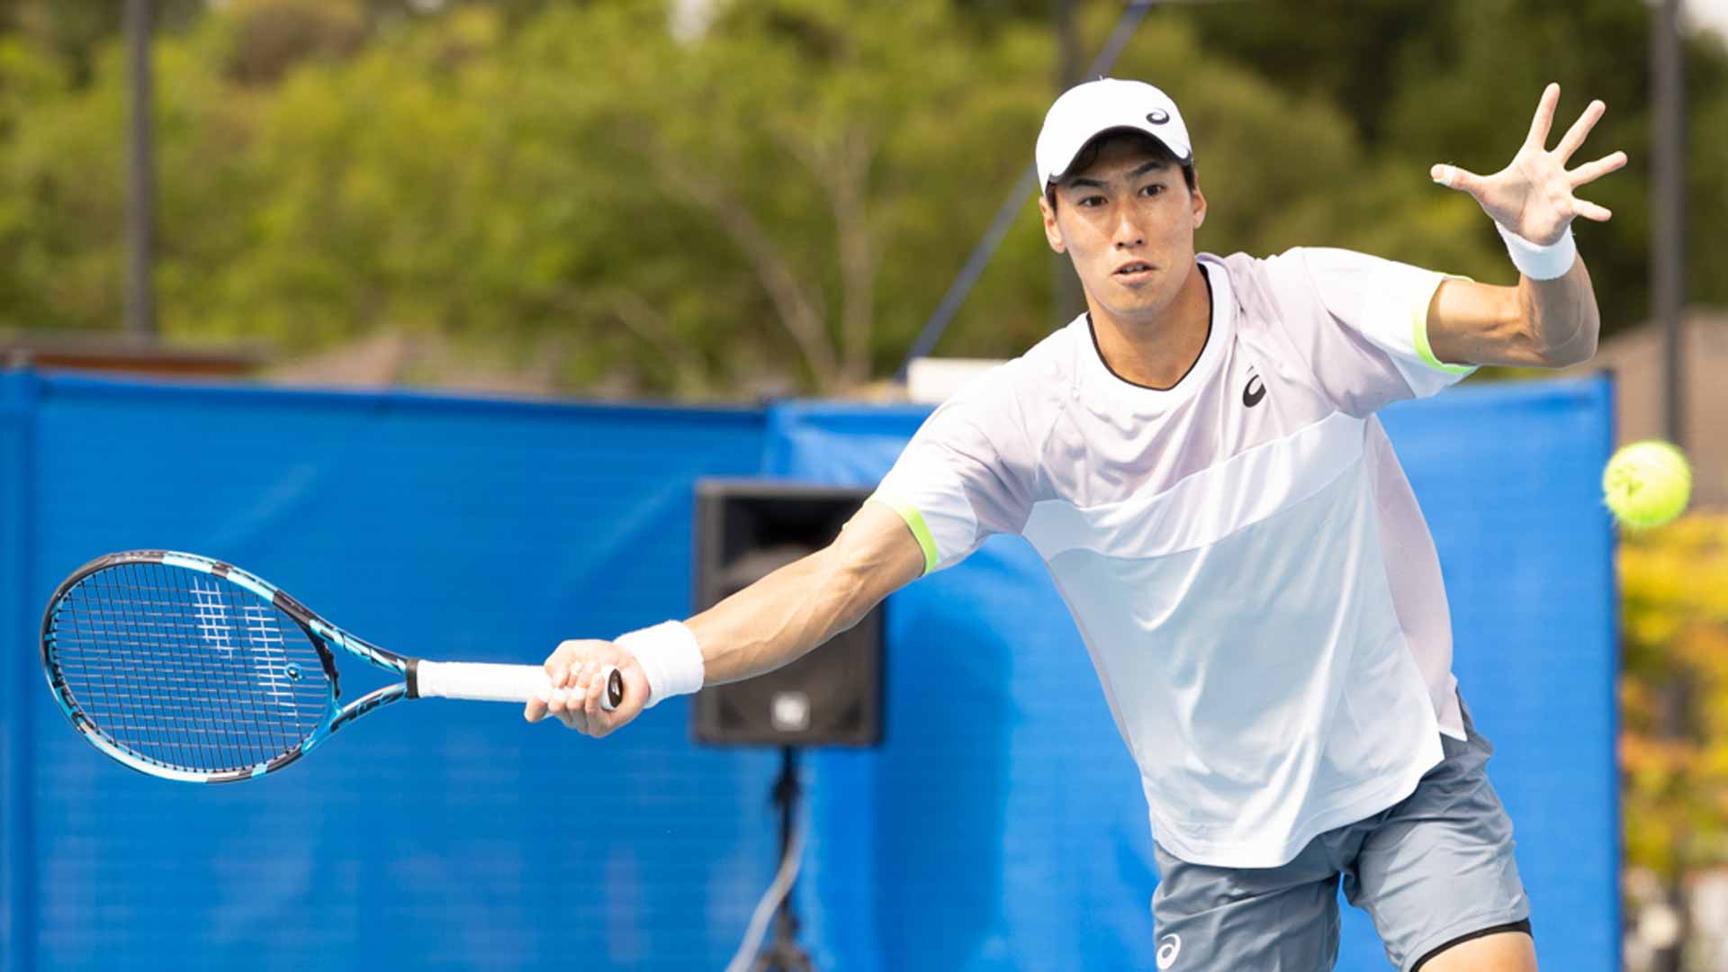 Lý Hoàng Nam thua trong lần đầu gặp top 100 ATP